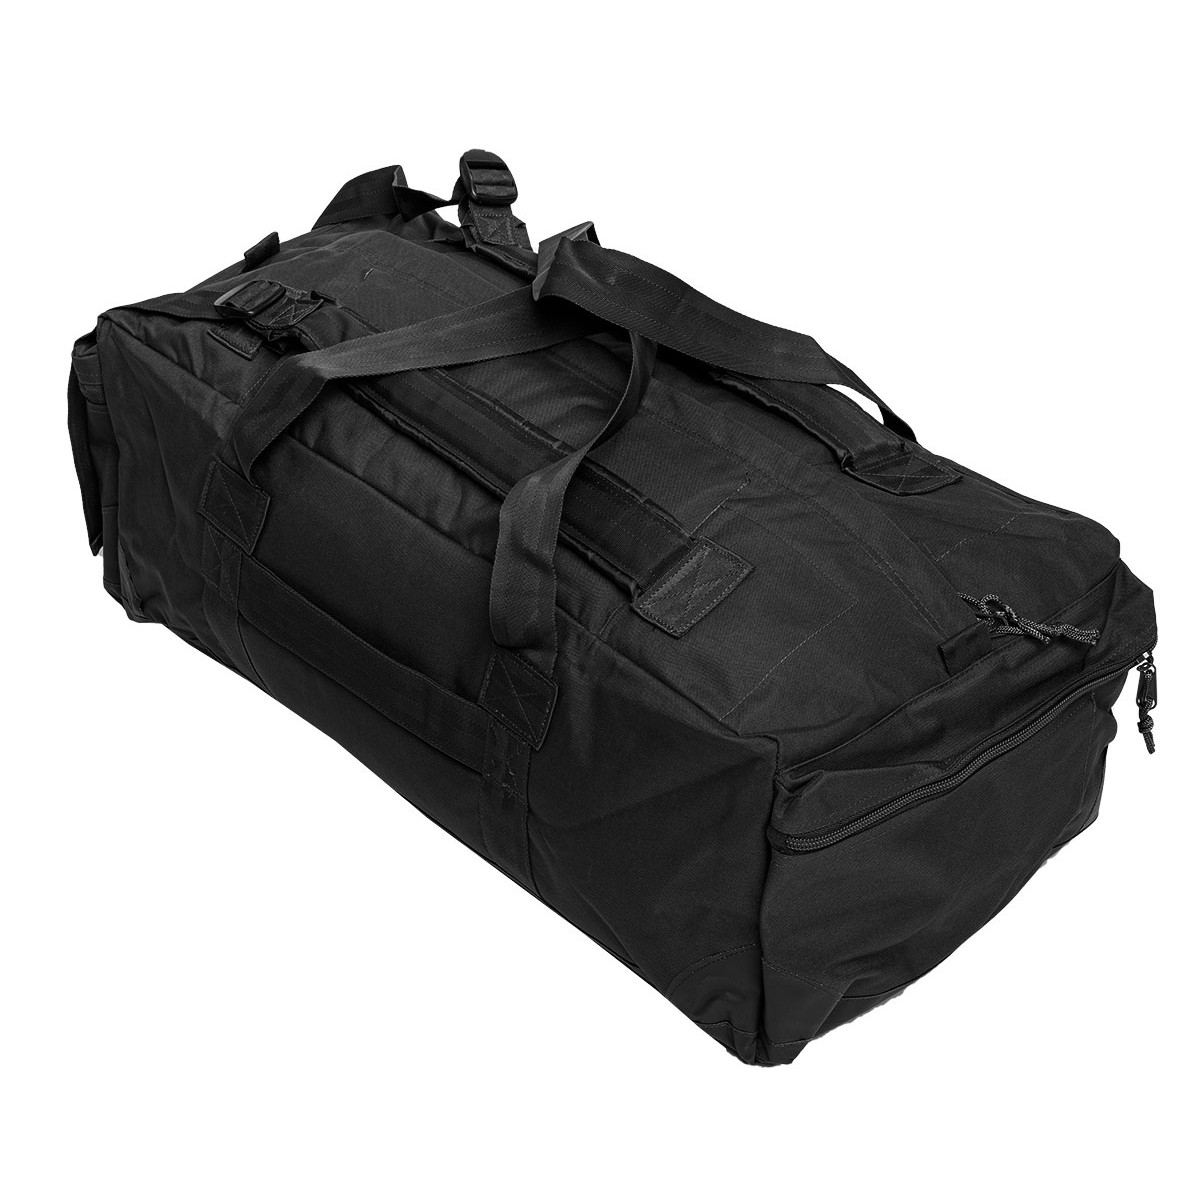 Mil-Tec résistant à l'eau Military Army Men's Travel Holdall Duffle Bag 72 L Noir 